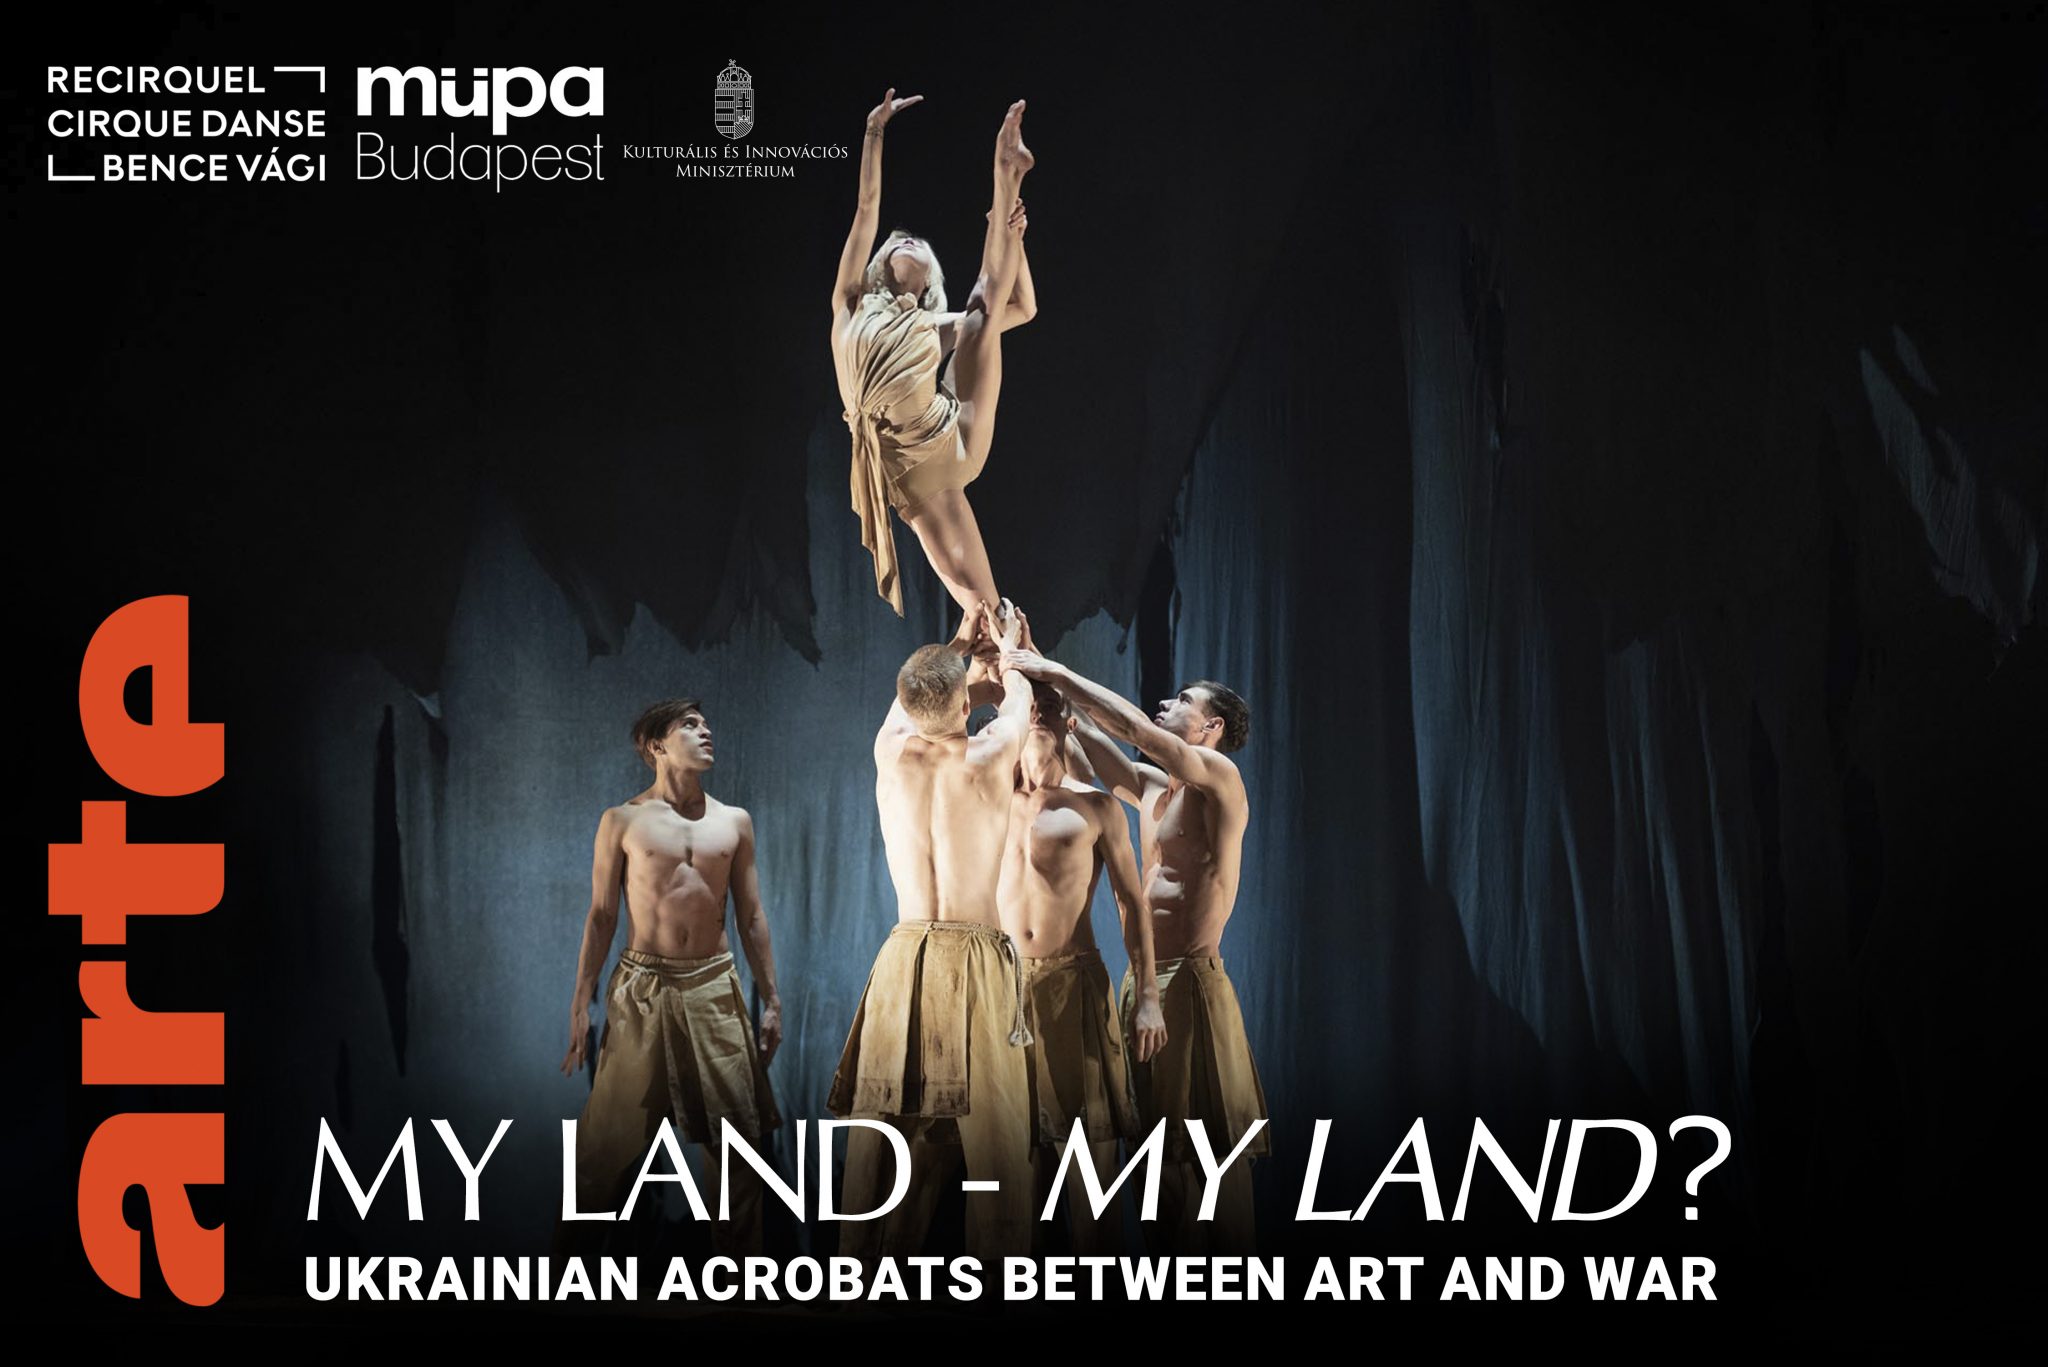 Az ARTE My Land dokumentumfilmje elérhető angol, spanyol, olasz és lengyel felirattal is